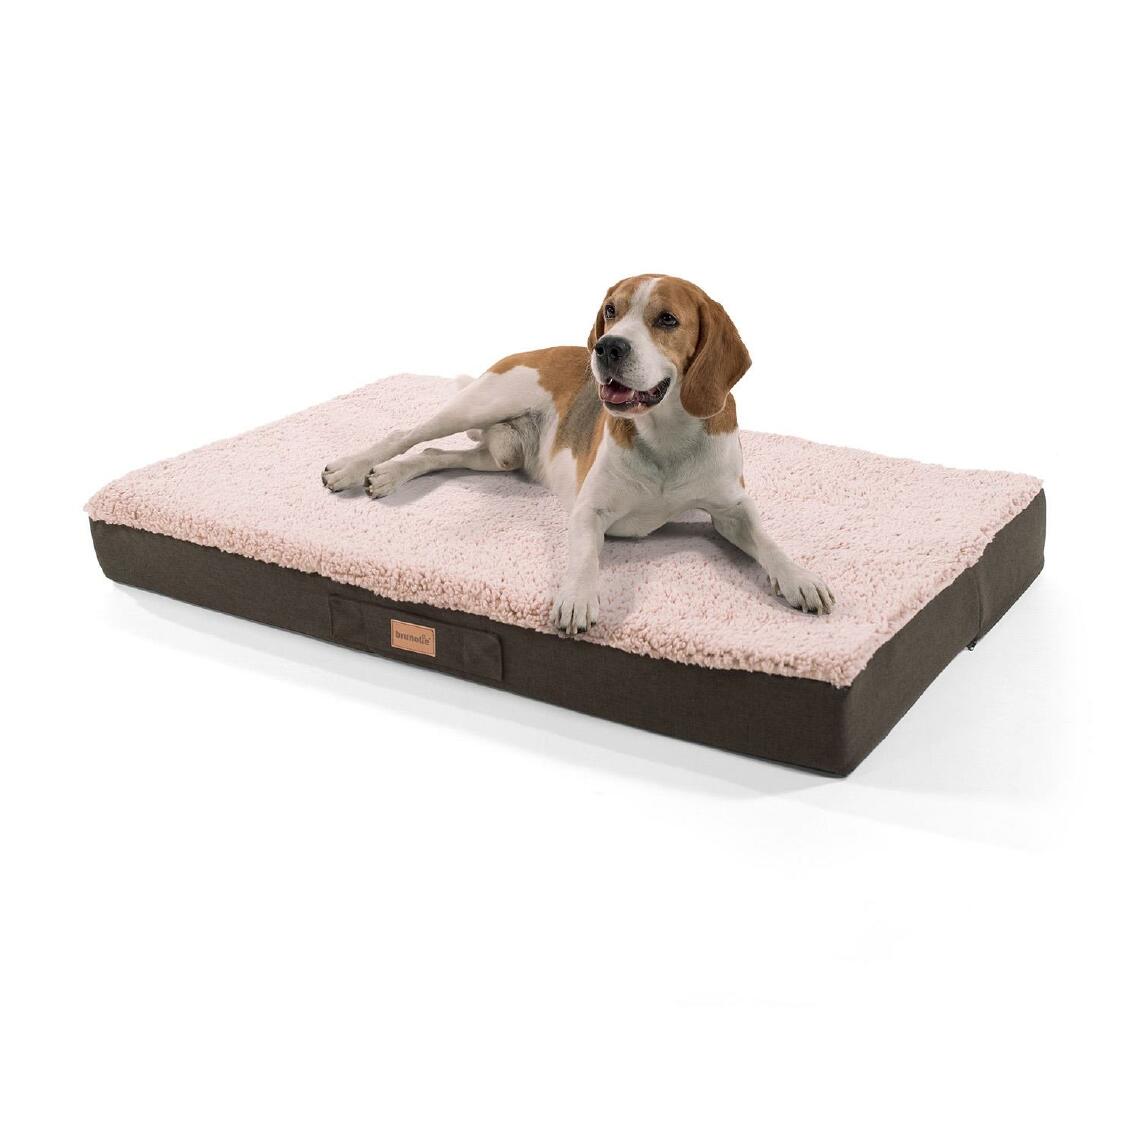 Brunolie - Lit pour chien - Brunolie Balu , lavable, orthopédique et antidérapant - Taille L (100 x 65 x 10 cm) - Beige - Corbeille pour chien